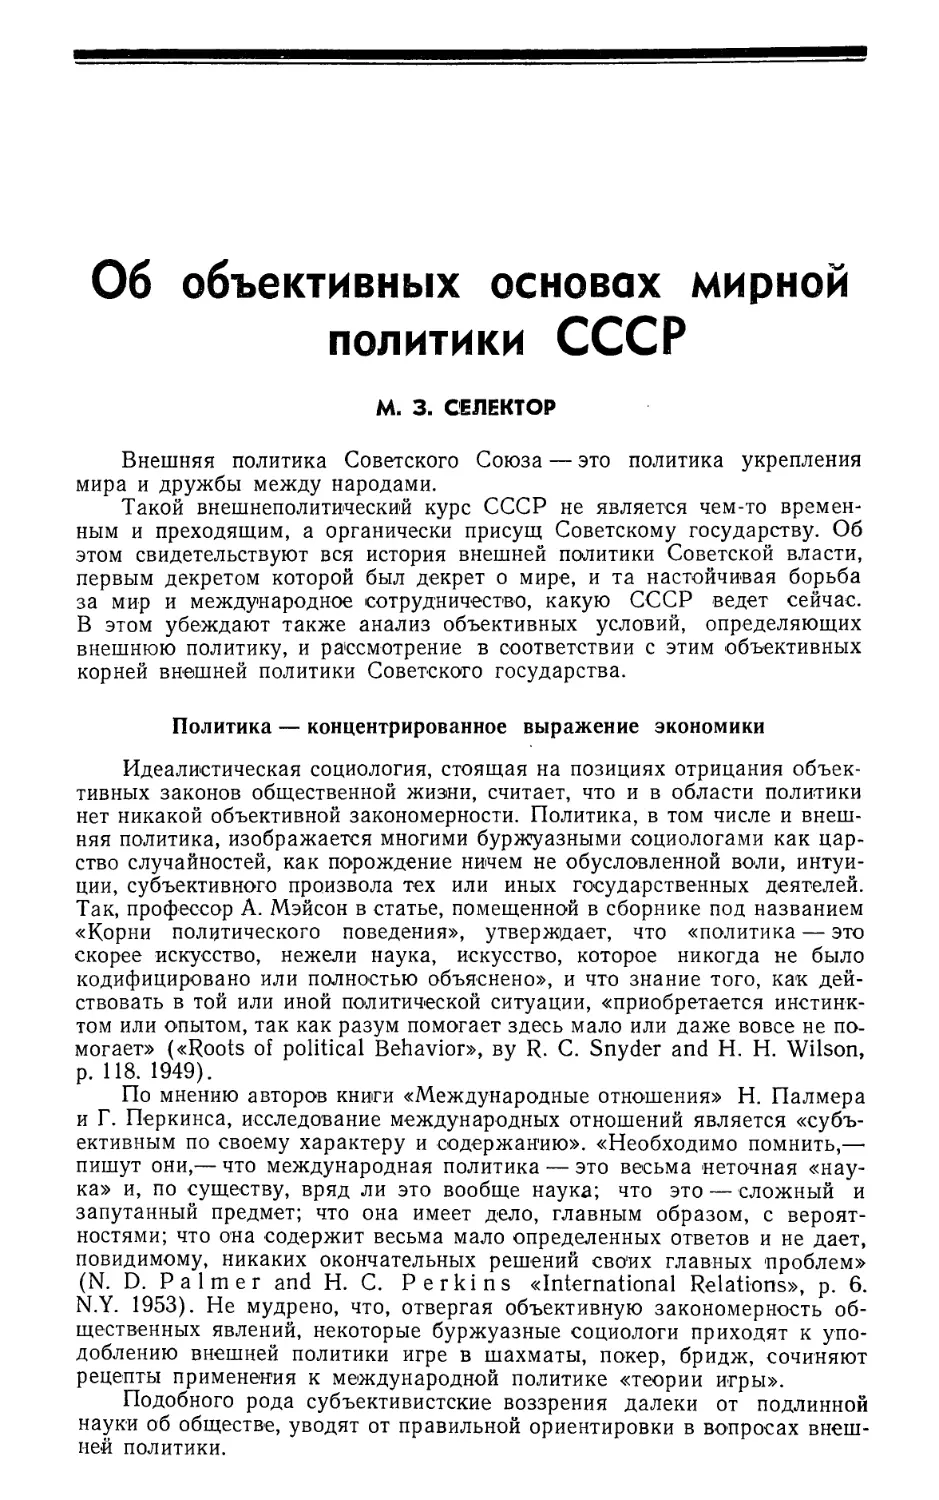 М. 3. Селектор — Об объективных основах мирной политики СССР